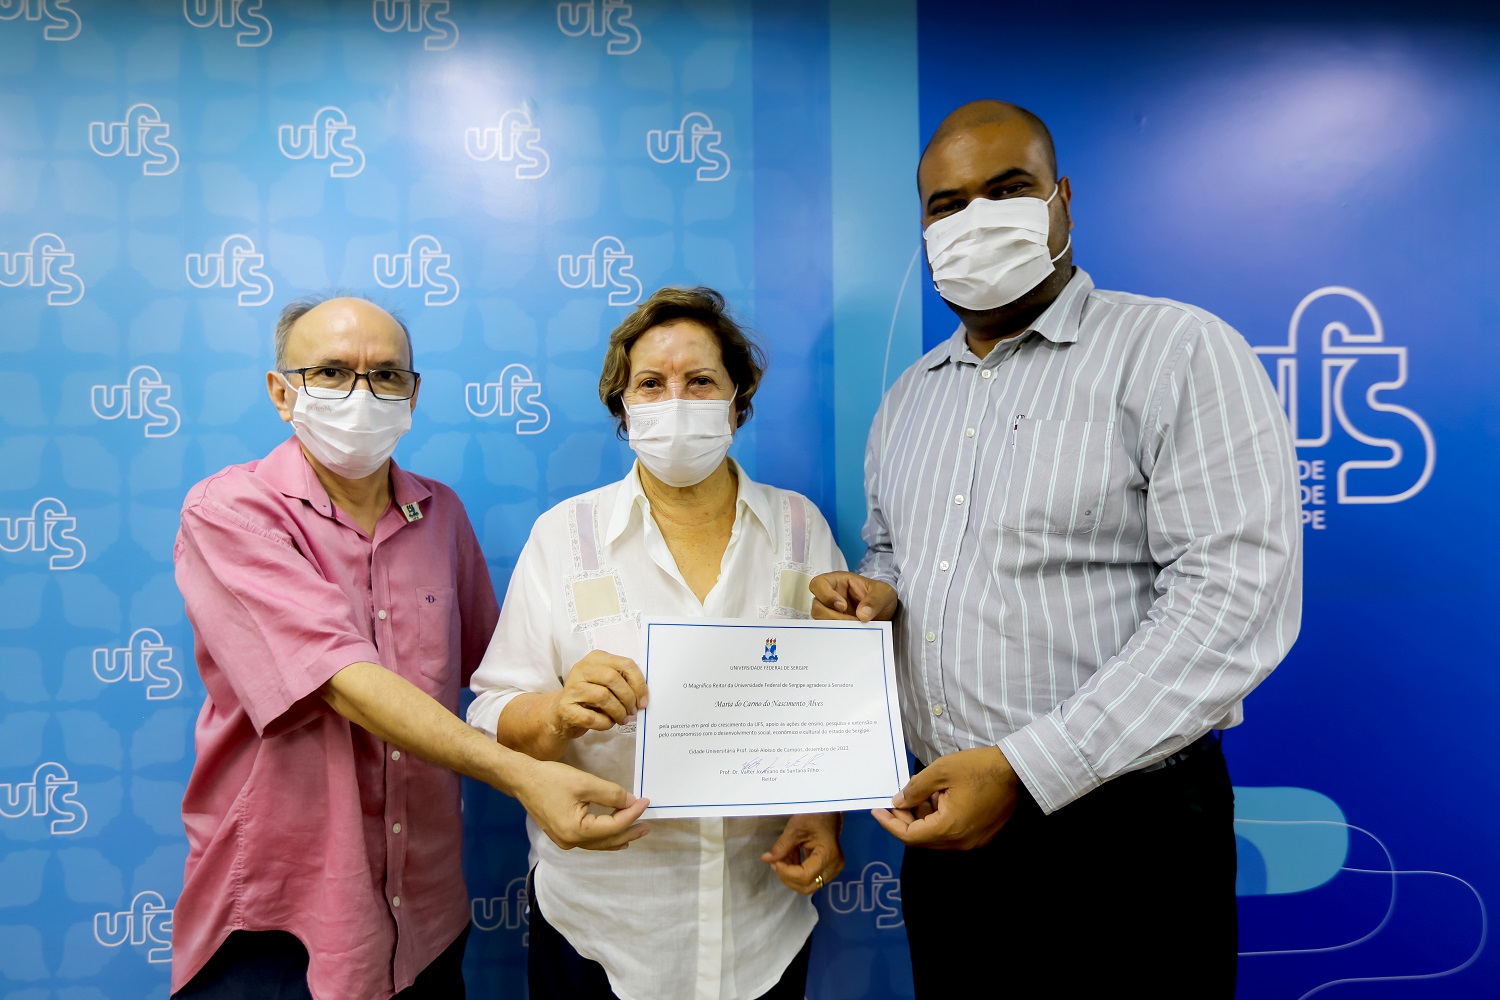 Entrega de certificado para a senadora Maria do Carmo. (foto: Schirlene Reis/Ascom UFS)